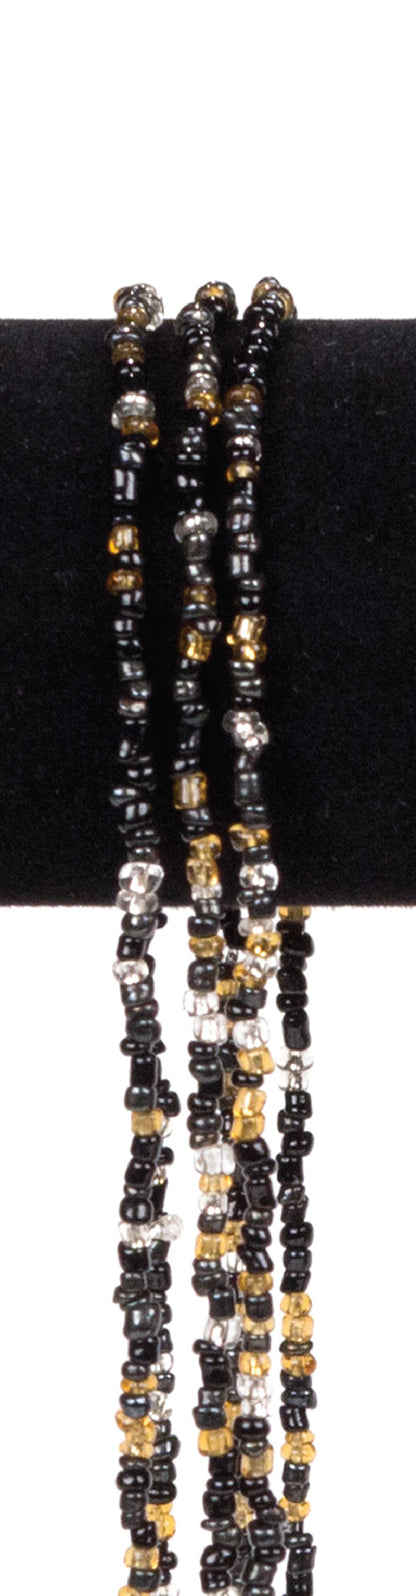 Three-Stranded Hippy Beads #2376